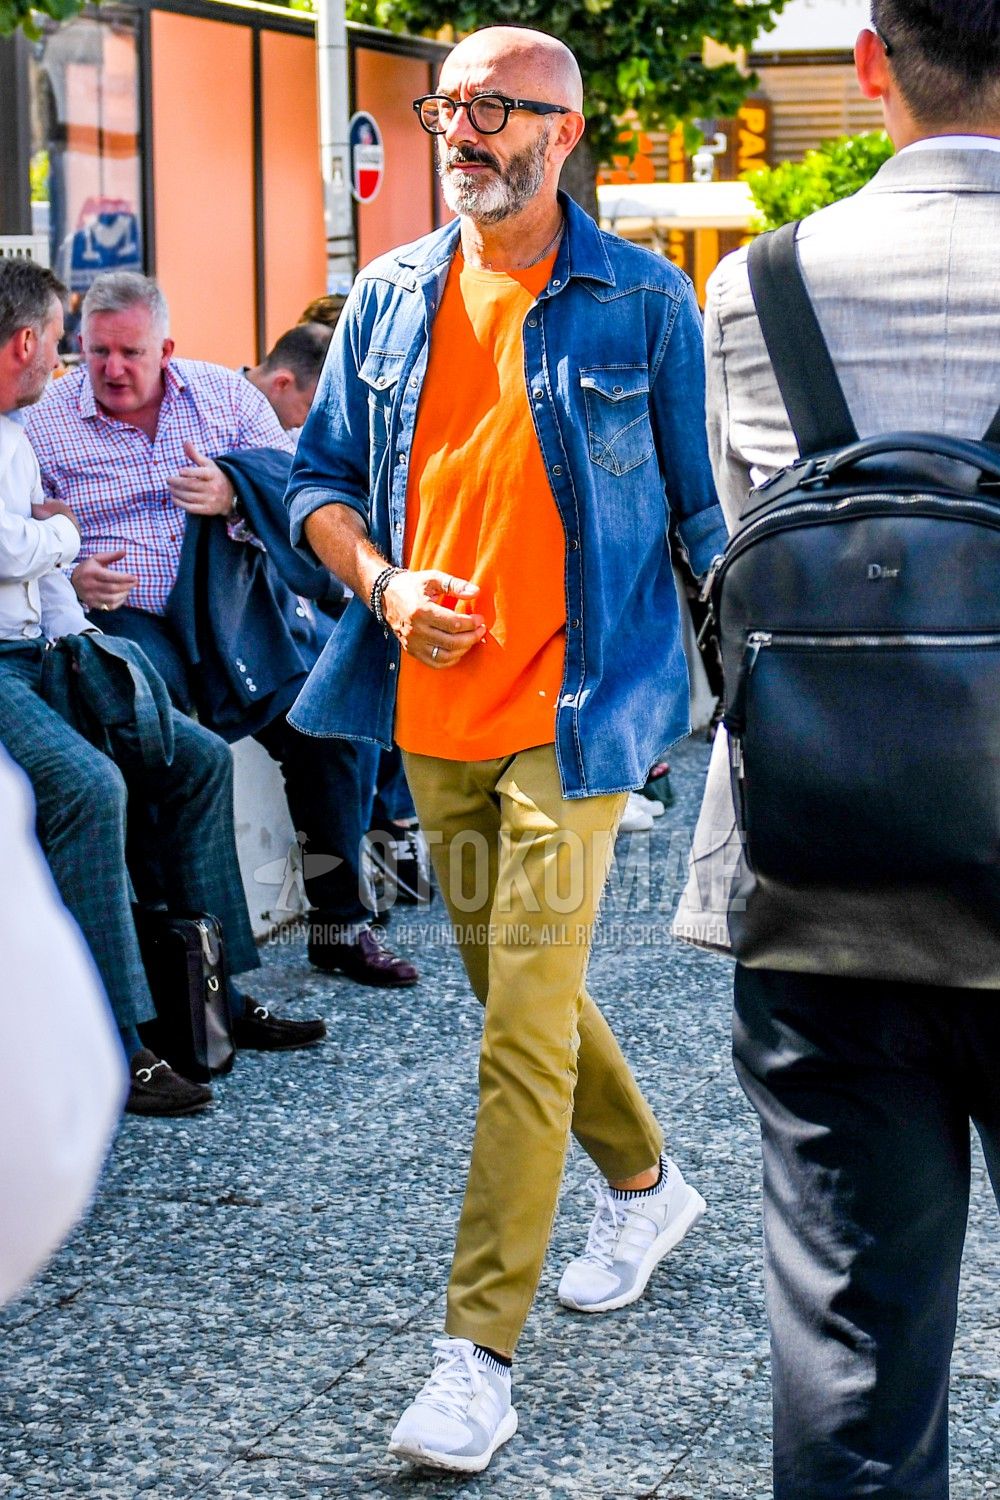 オレンジtシャツ コーデ特集 ビタミンカラーで明るい印象に仕上げたメンズの着こなし紹介 メンズファッションメディア Faoswalim ページ 3faoswalim 男前研究所 ページ 3